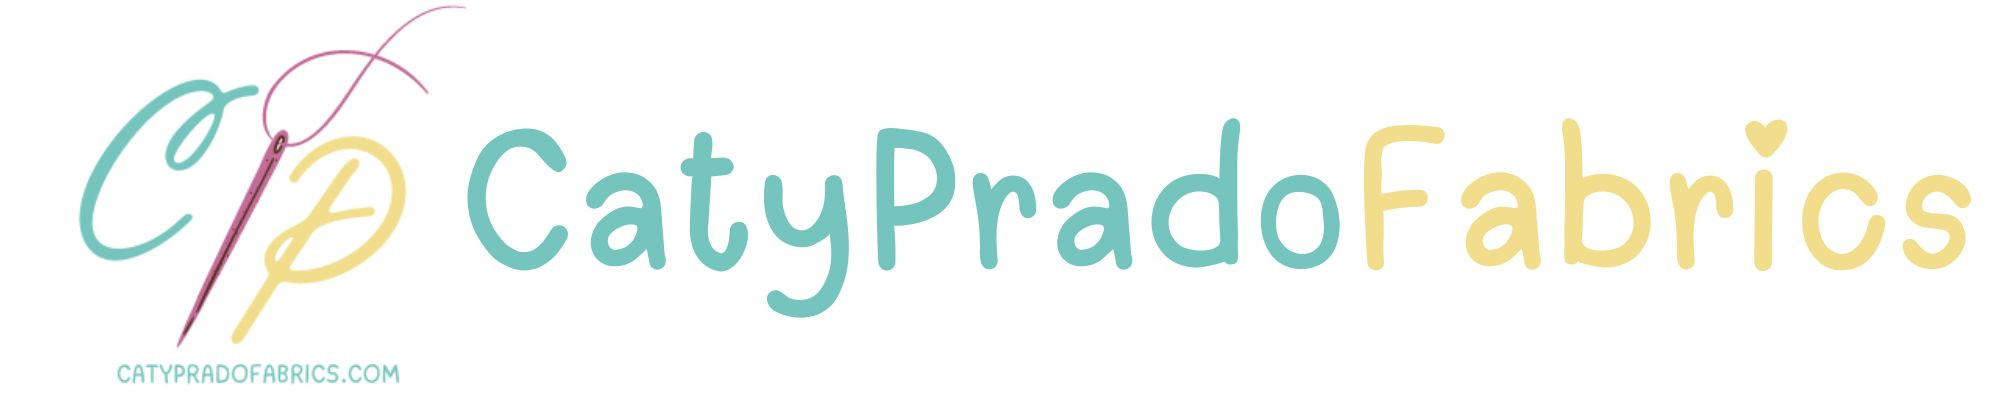 Catypradofabrics logo